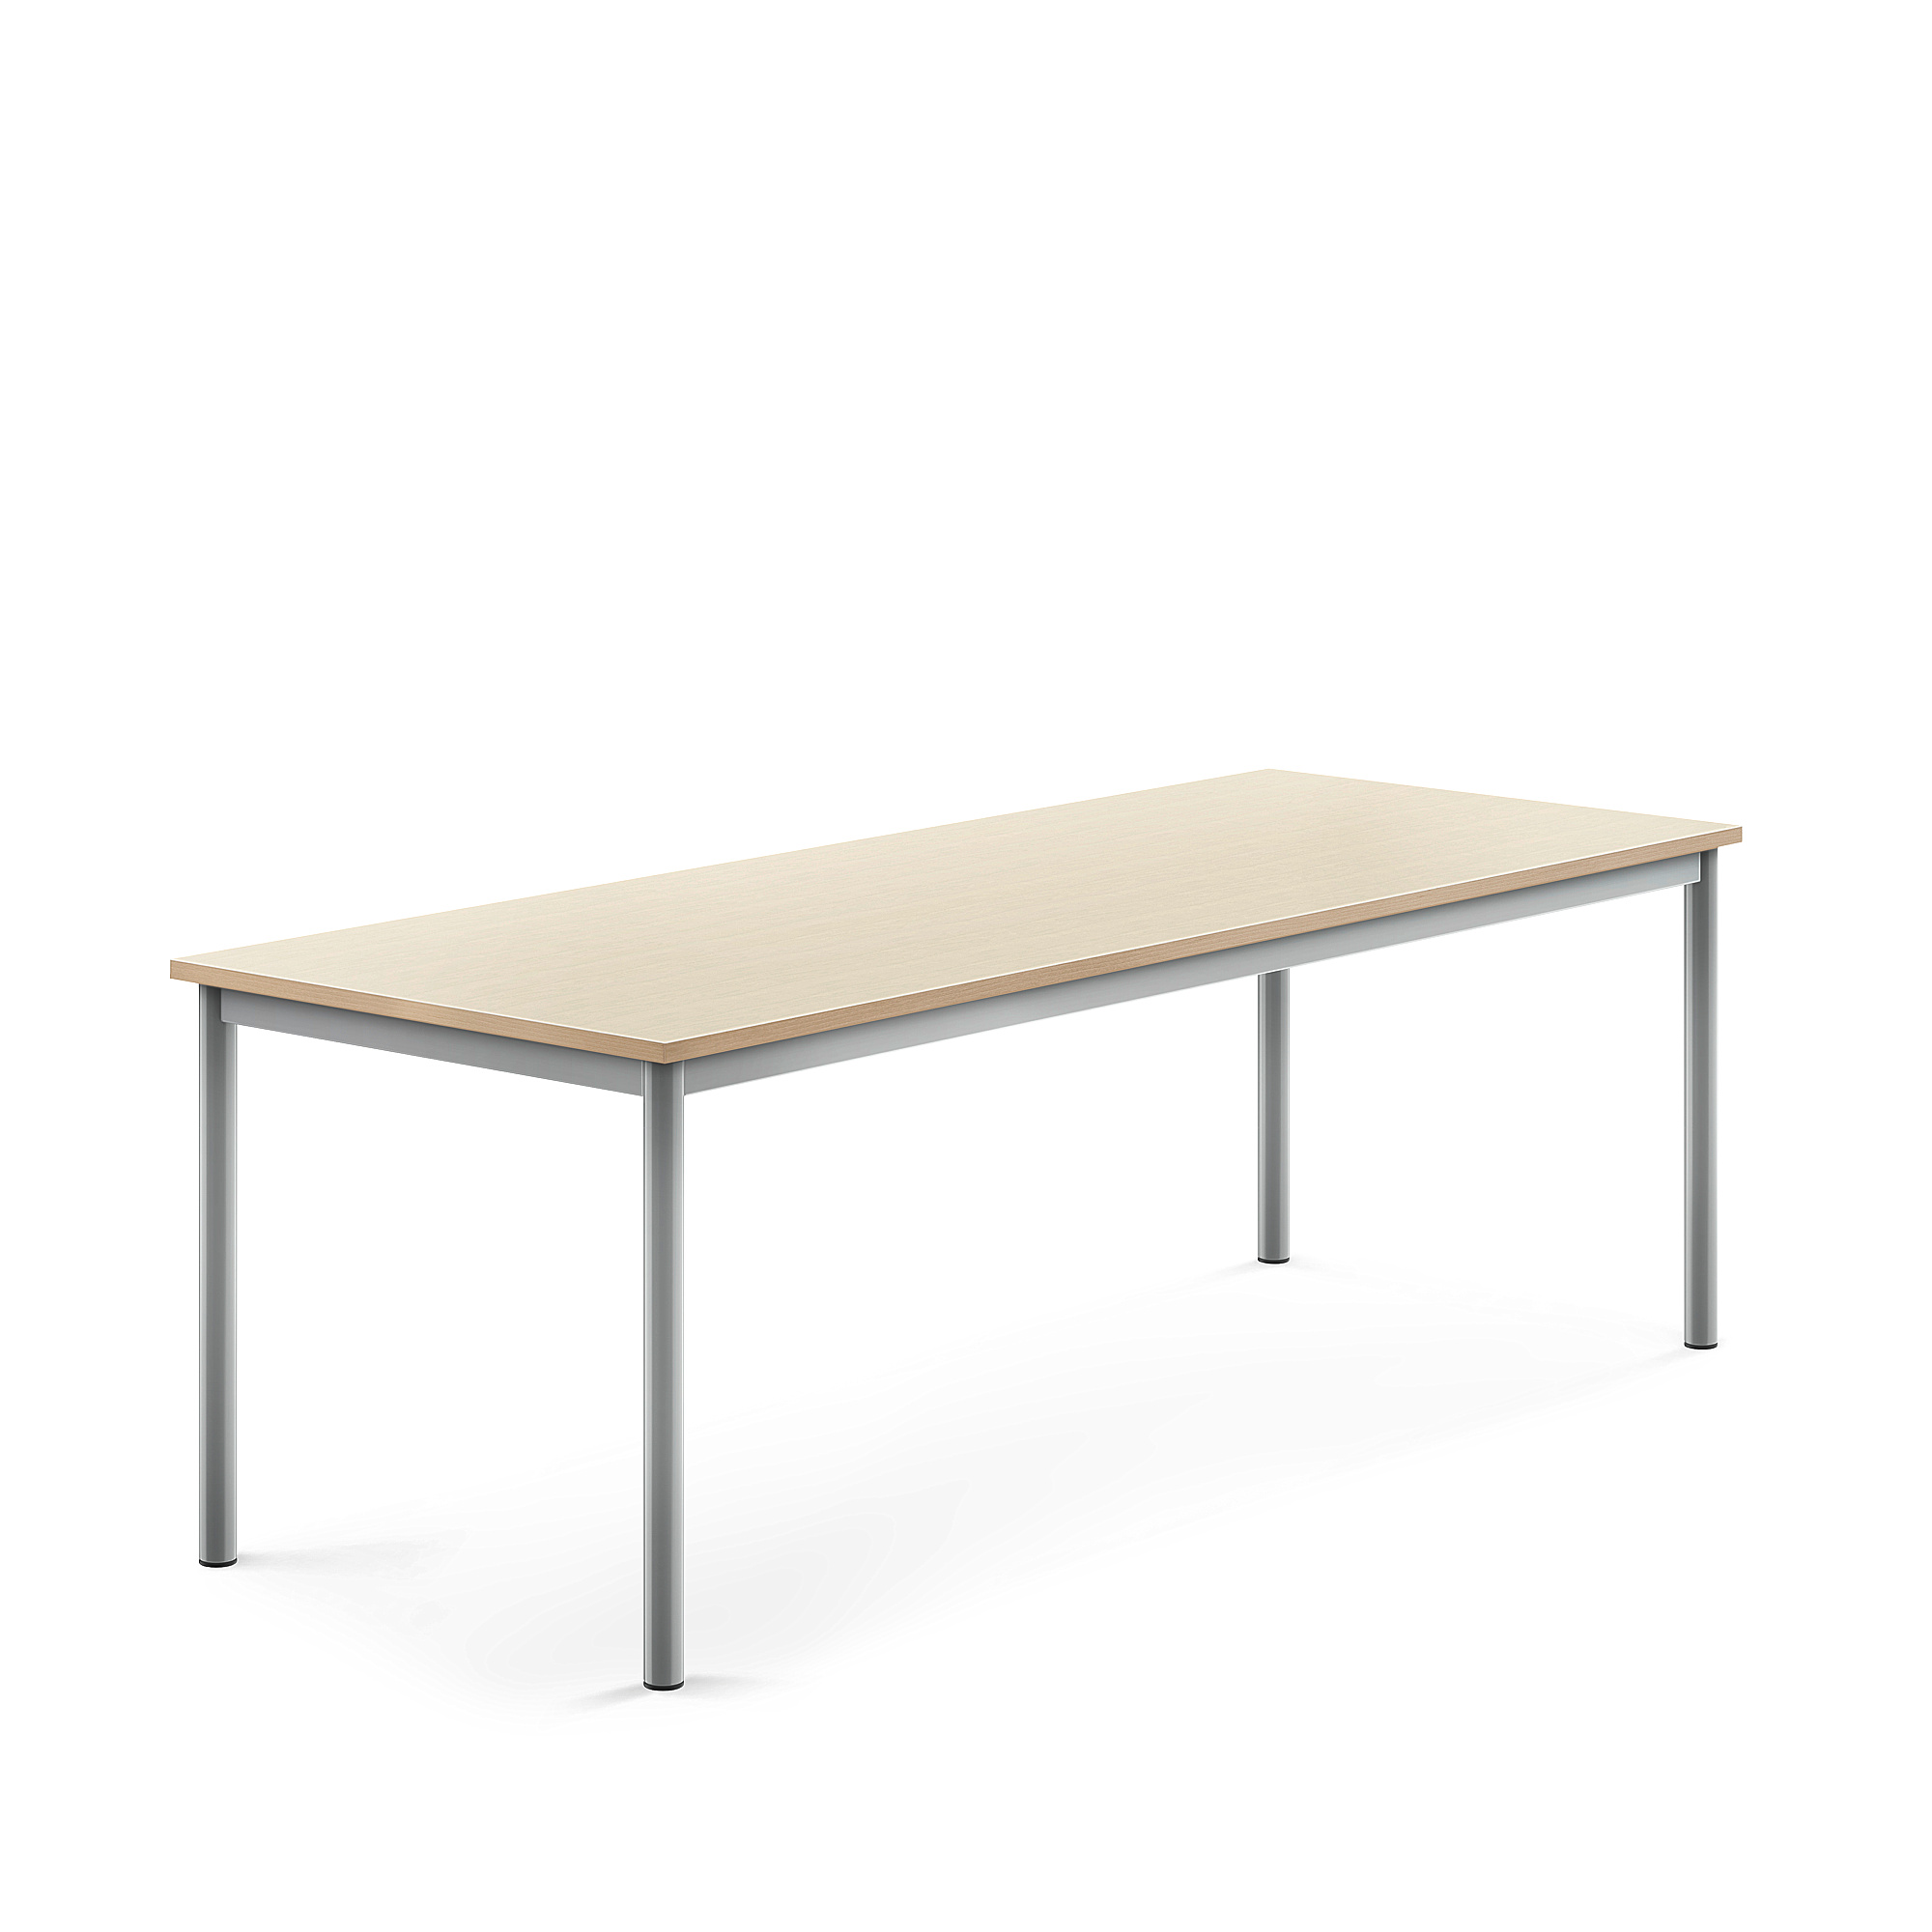 Stůl BORÅS, 1800x700x600 mm, stříbrné nohy, HPL deska, bříza